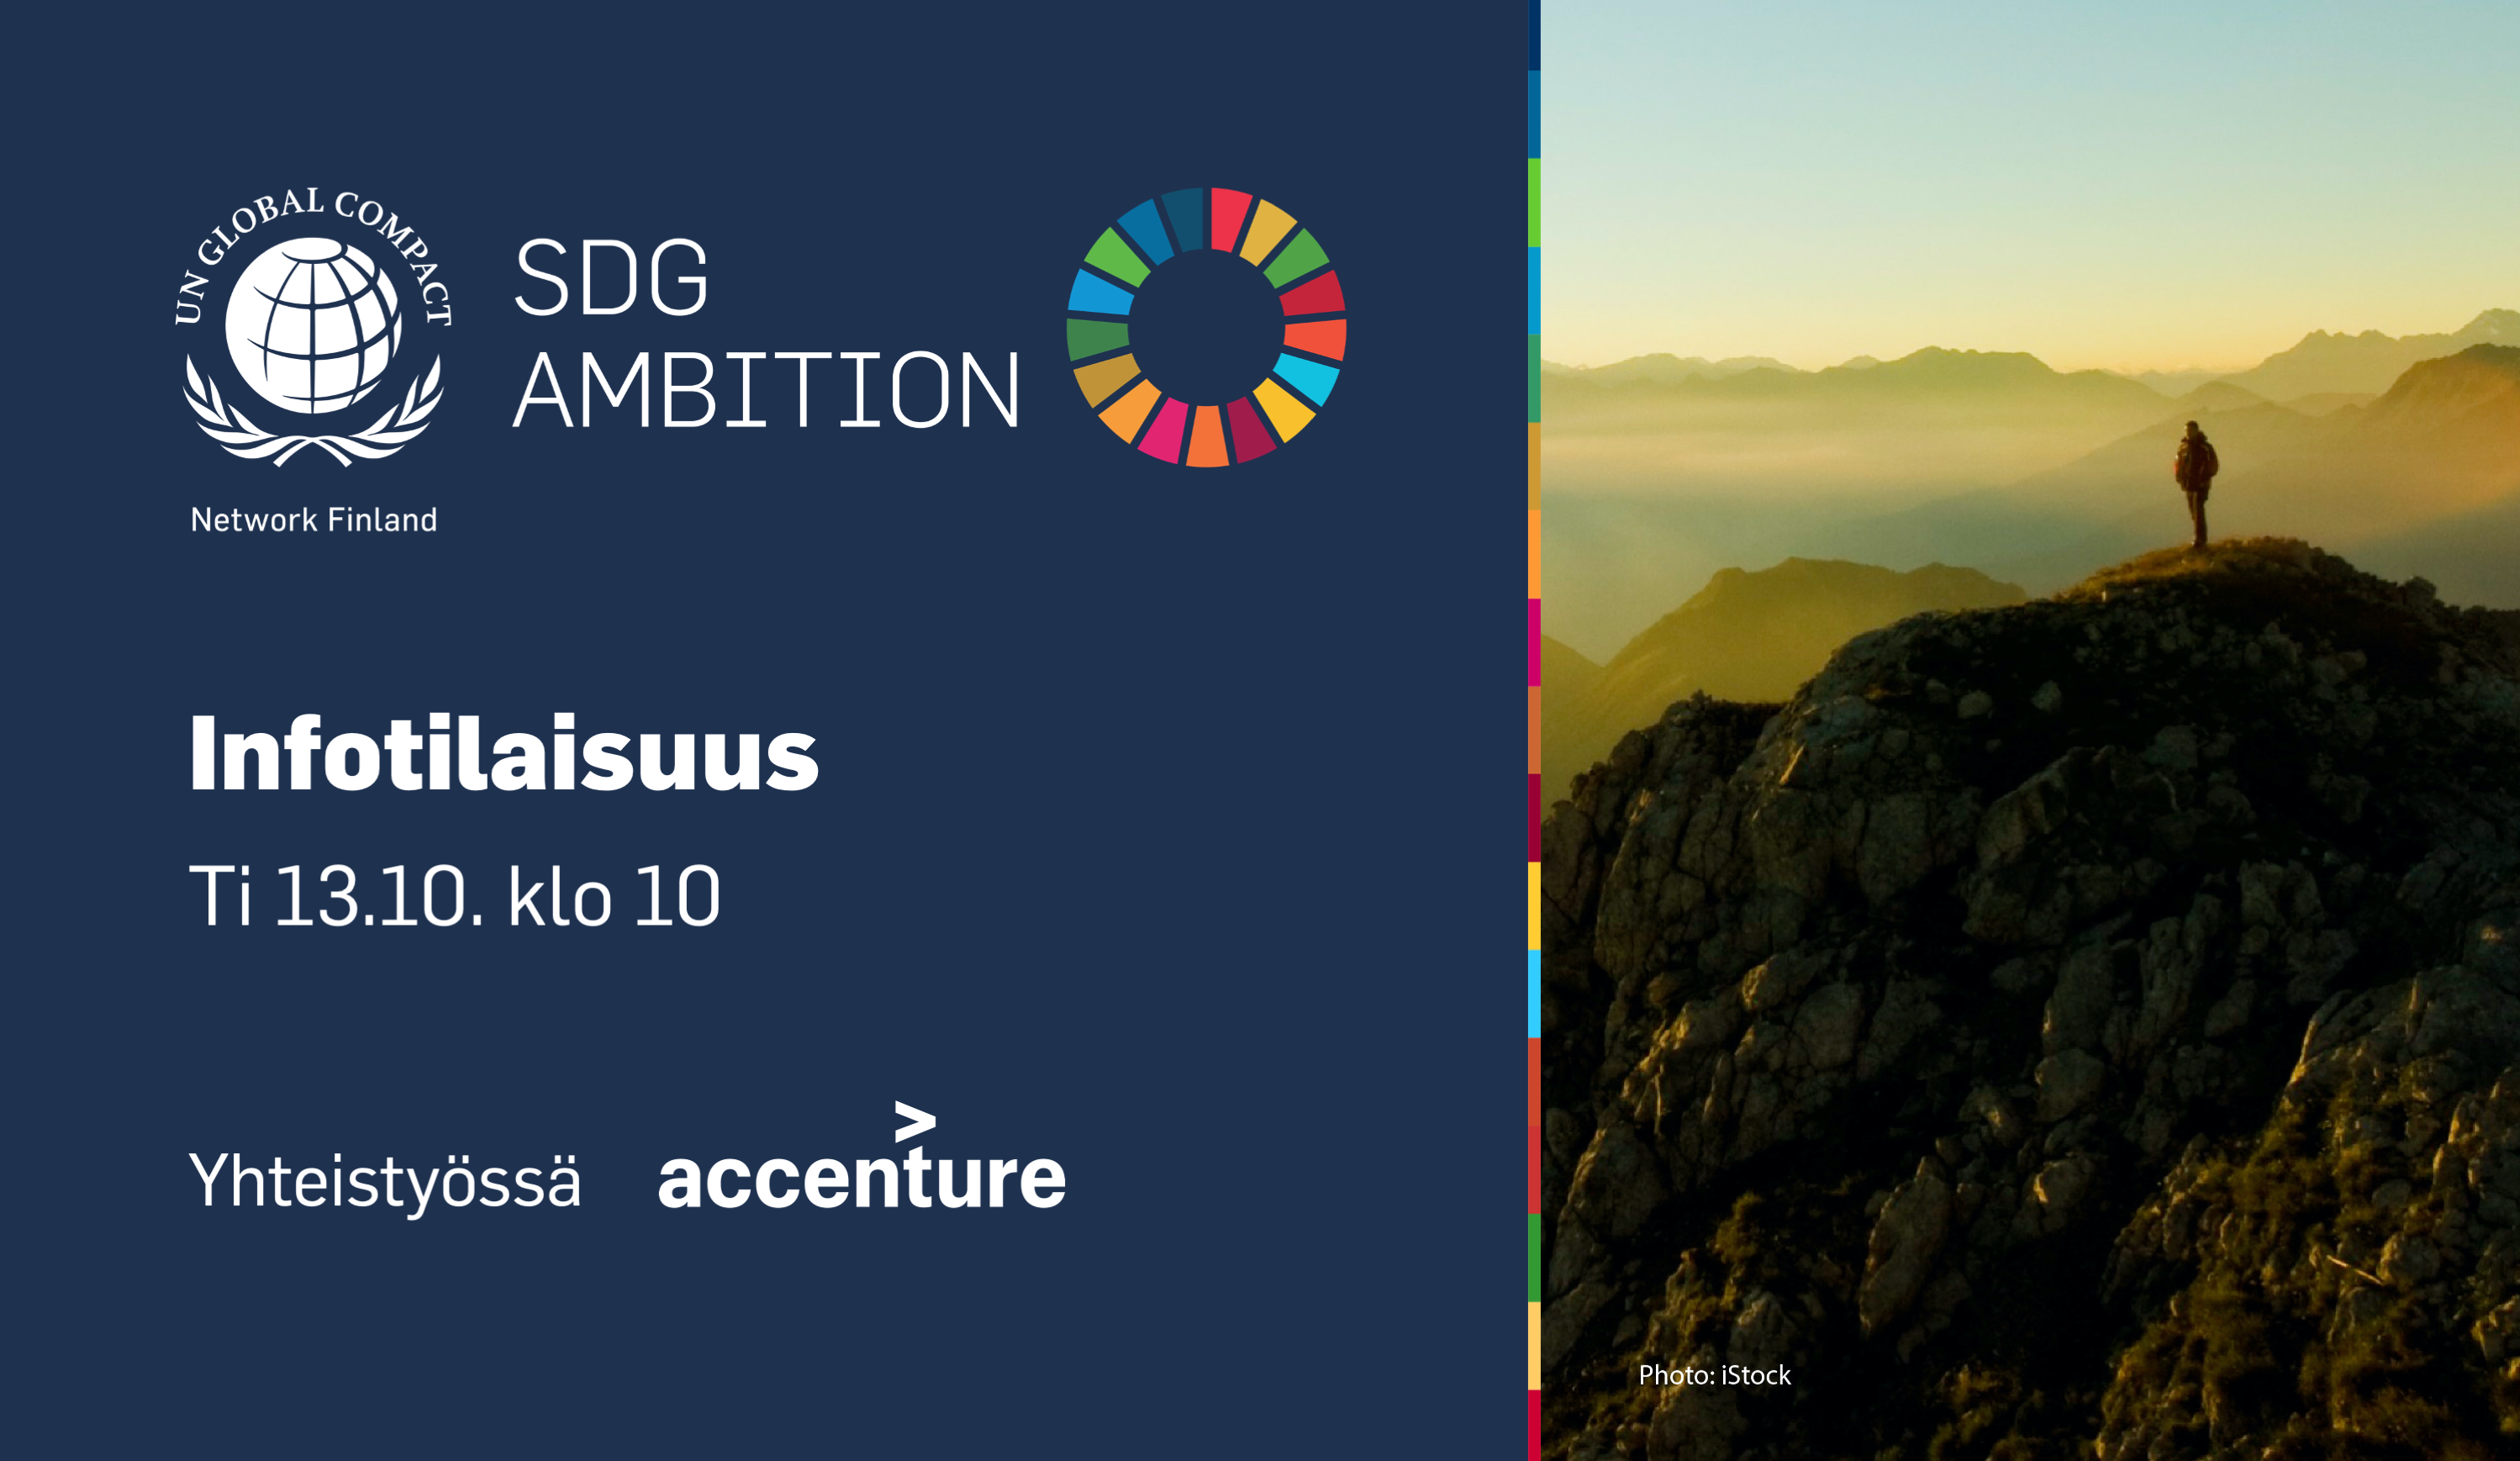 Suomen Global Compact -verkosto lanseeraa uuden SDG Ambition -koulutuksen yhdessä Accenture Finlandin kanssa. Tule kuulemaan lisätietoa koulutuksesta virtuaaliseen infotilaisuuteen ti 13.10. klo 10.